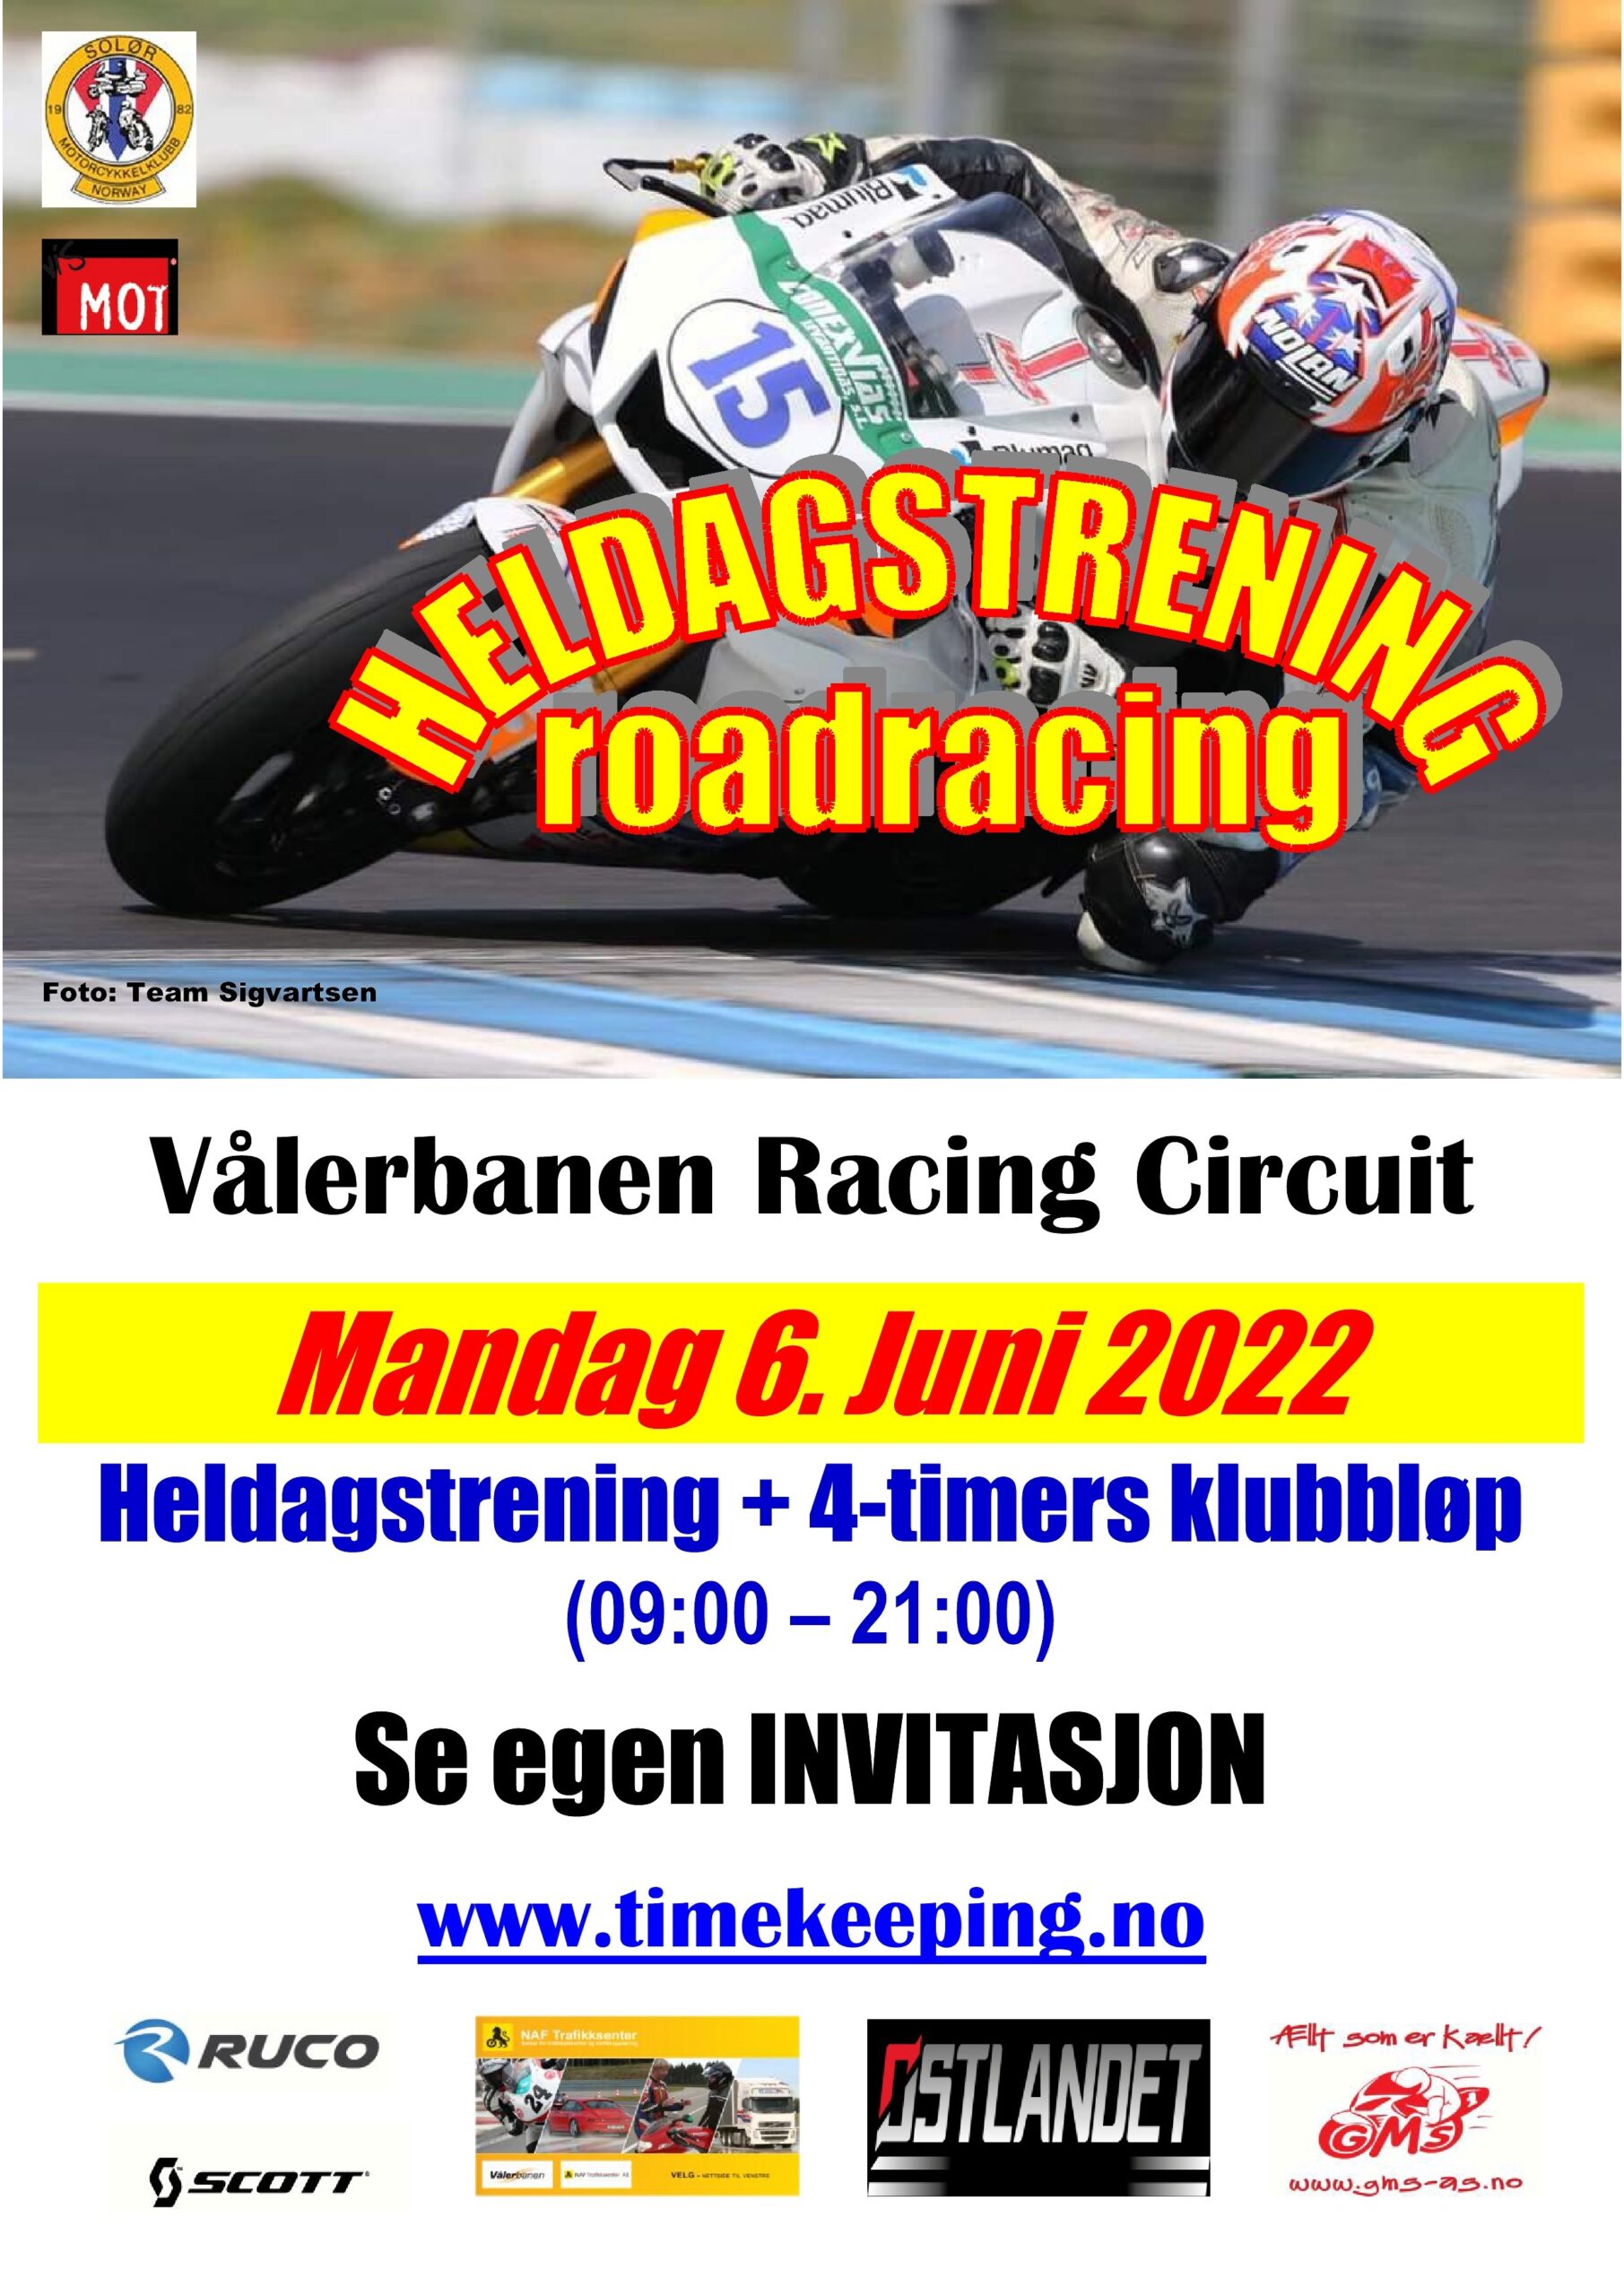 0 - Poster Heldagstrening roadracing - Vålerbanen - 6. Juni 2022